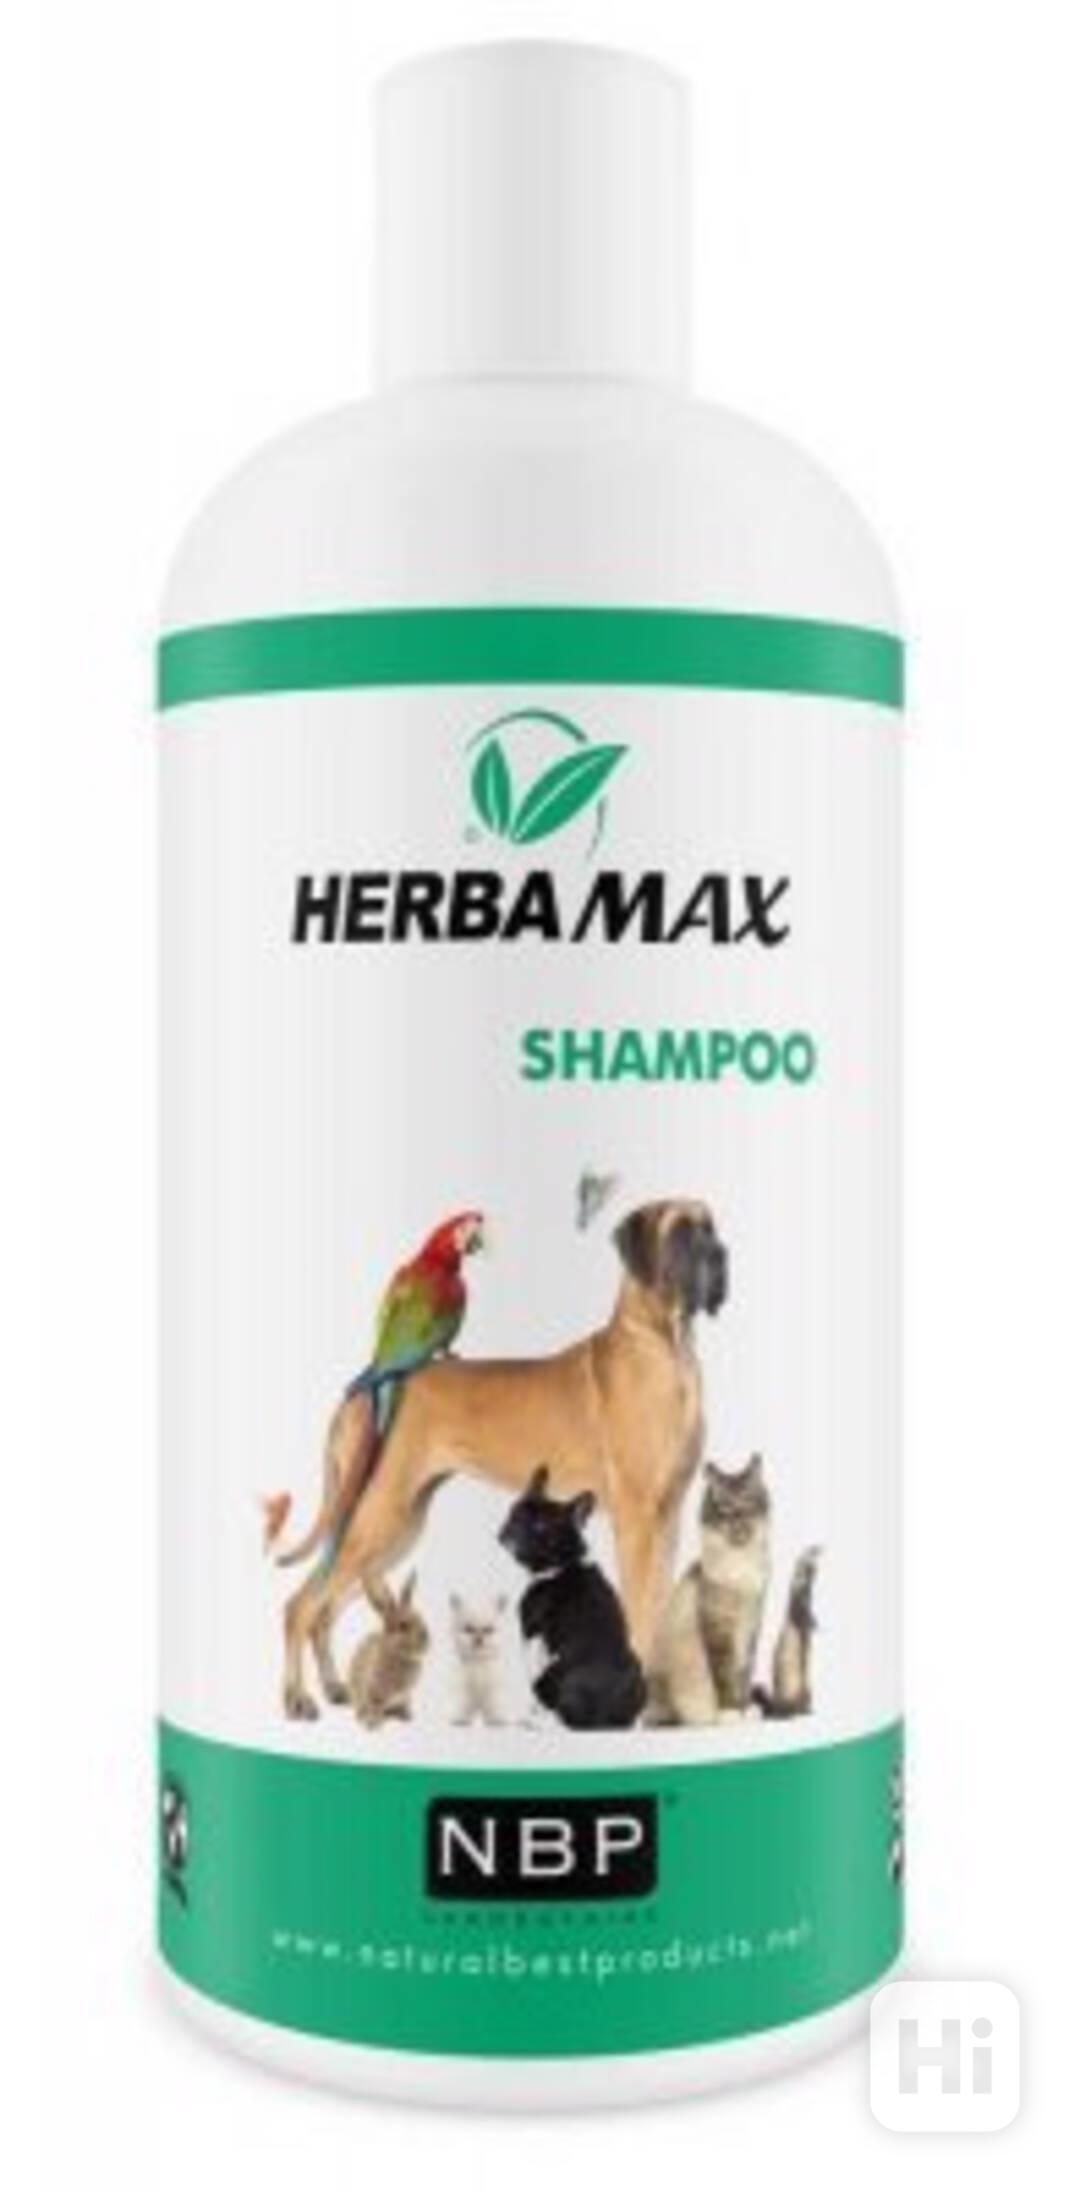 Herba Max Shampoo repelentní šampon - foto 1